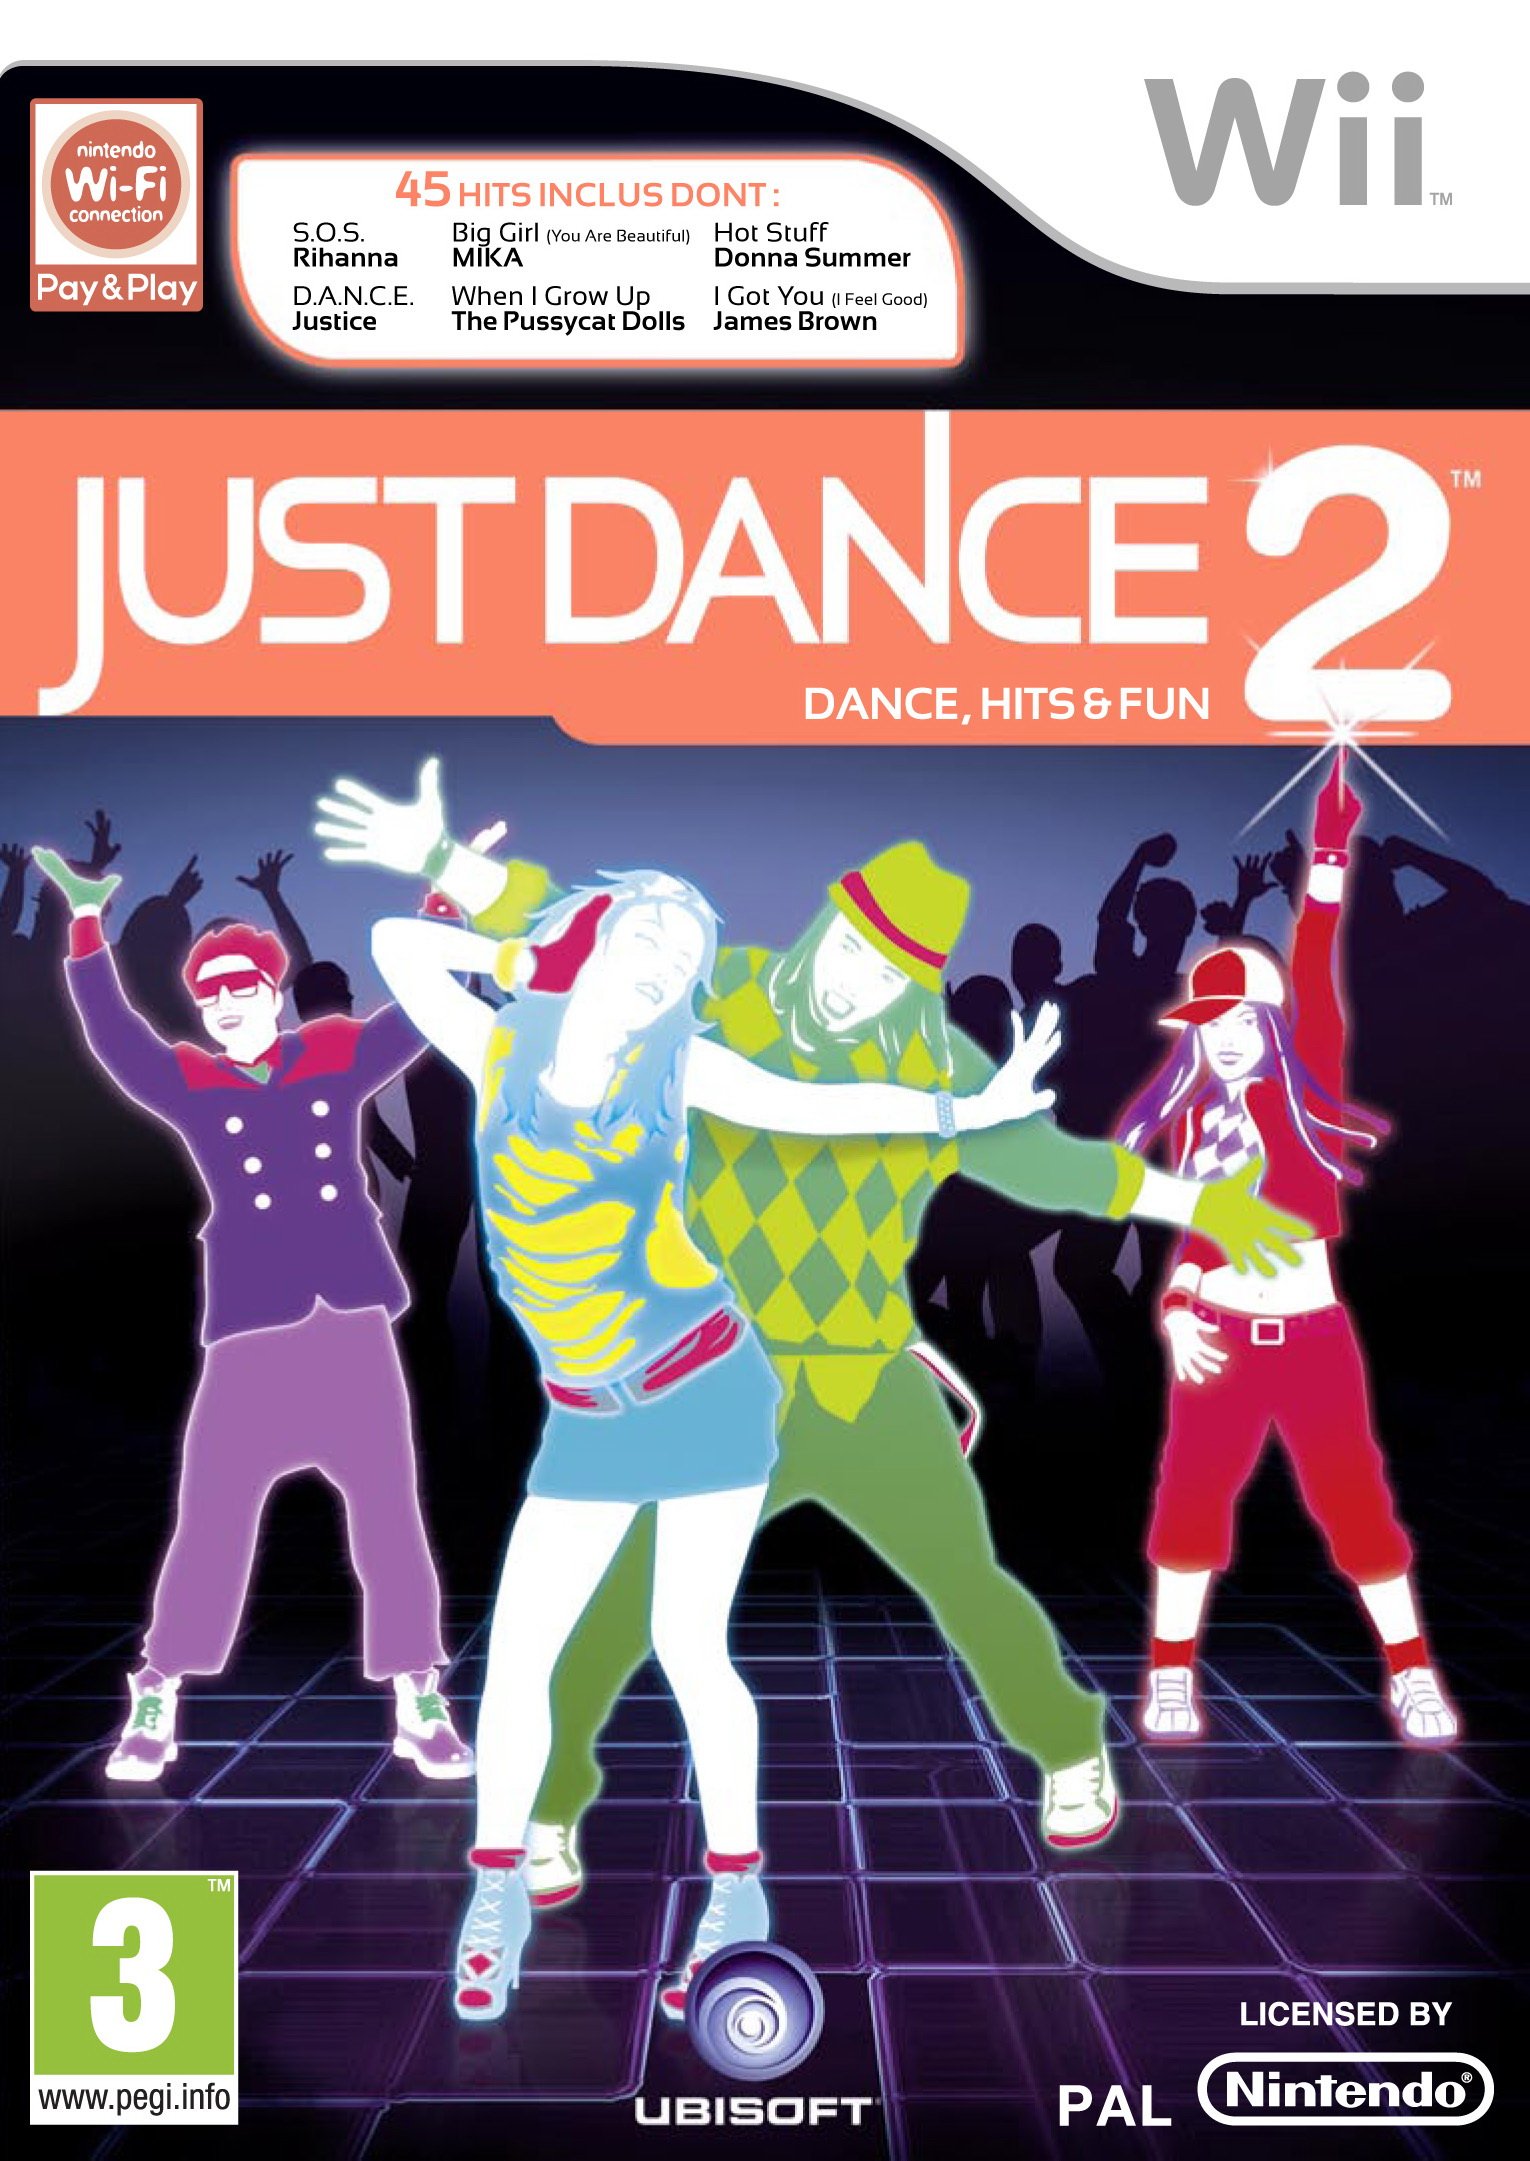 Just Dance 2 - Dance, Hits & Fun